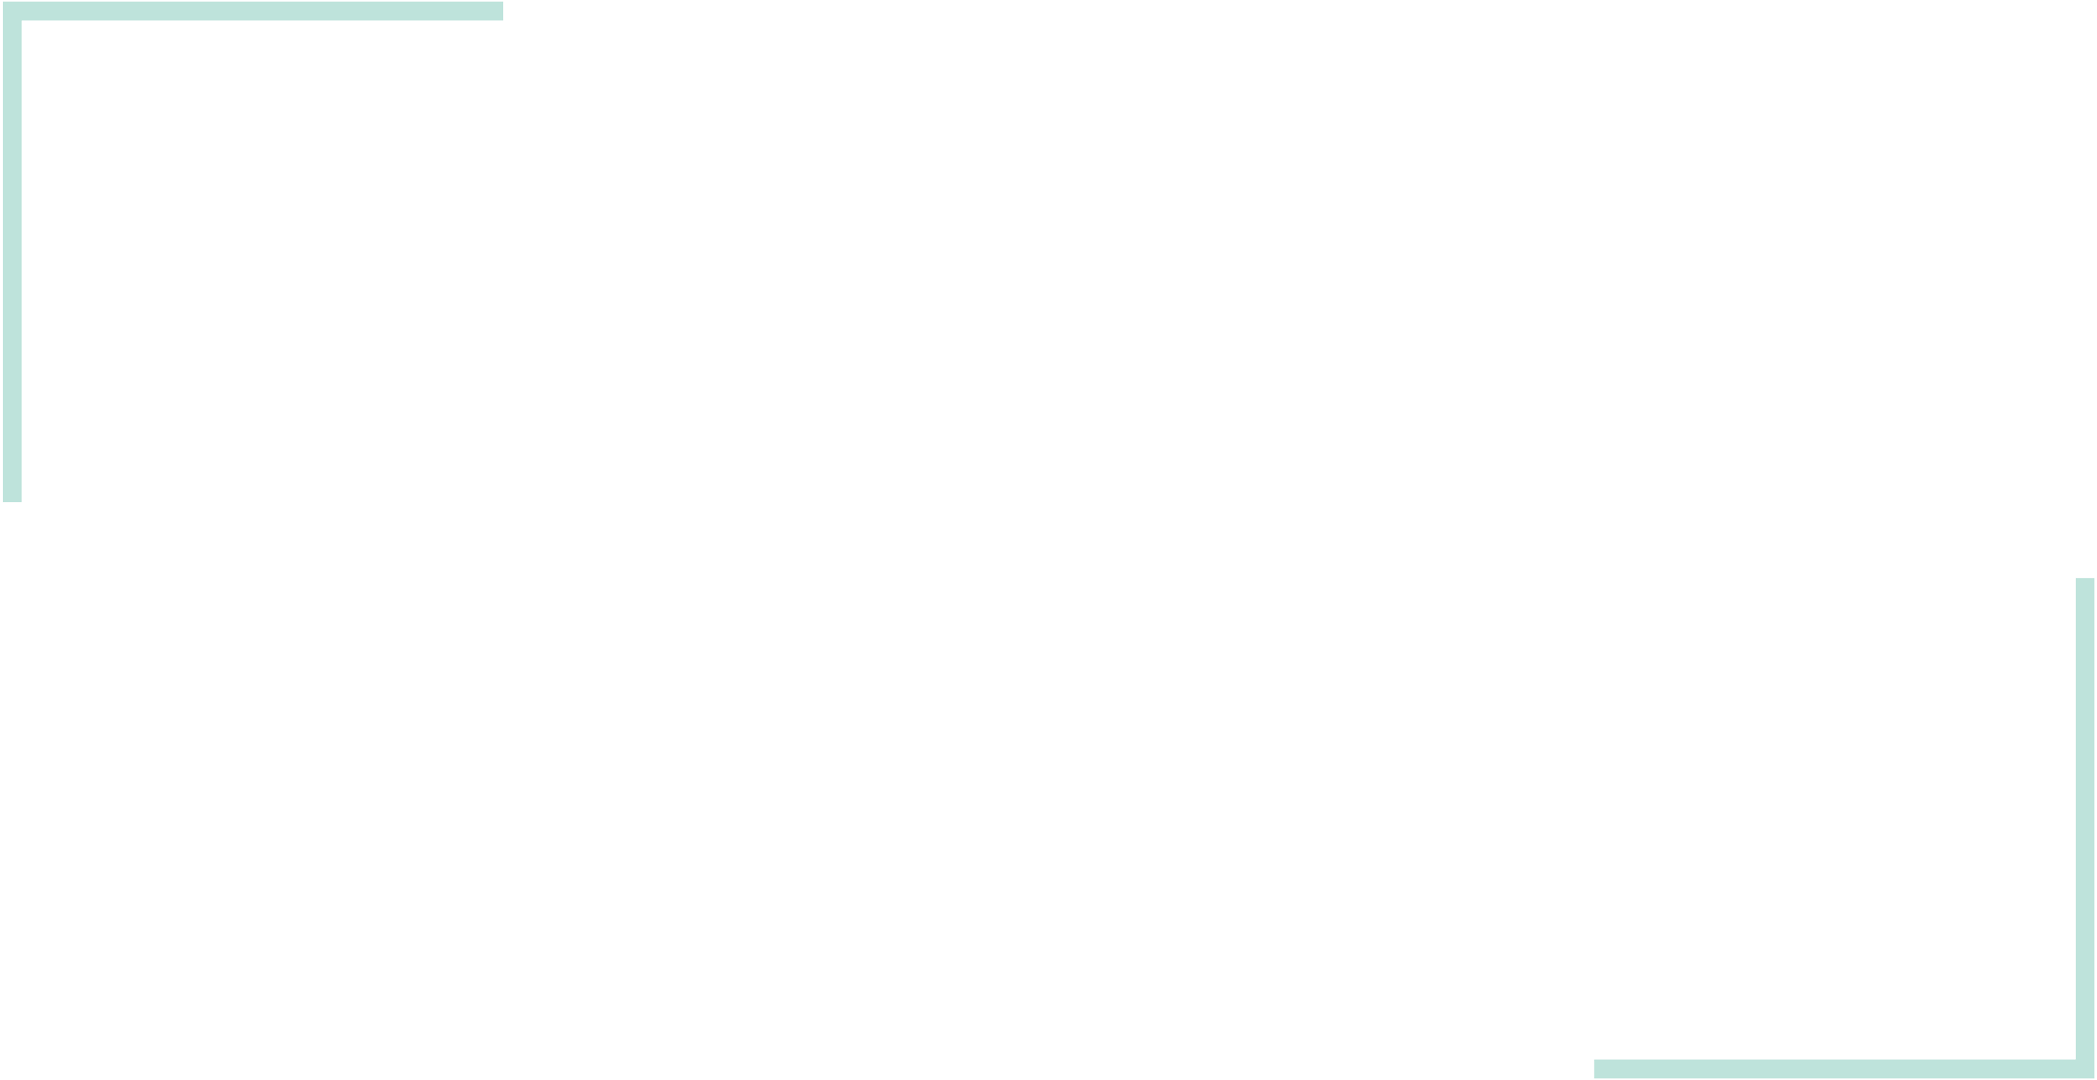 SA-Real-Estate-Group-Color-V1-ed